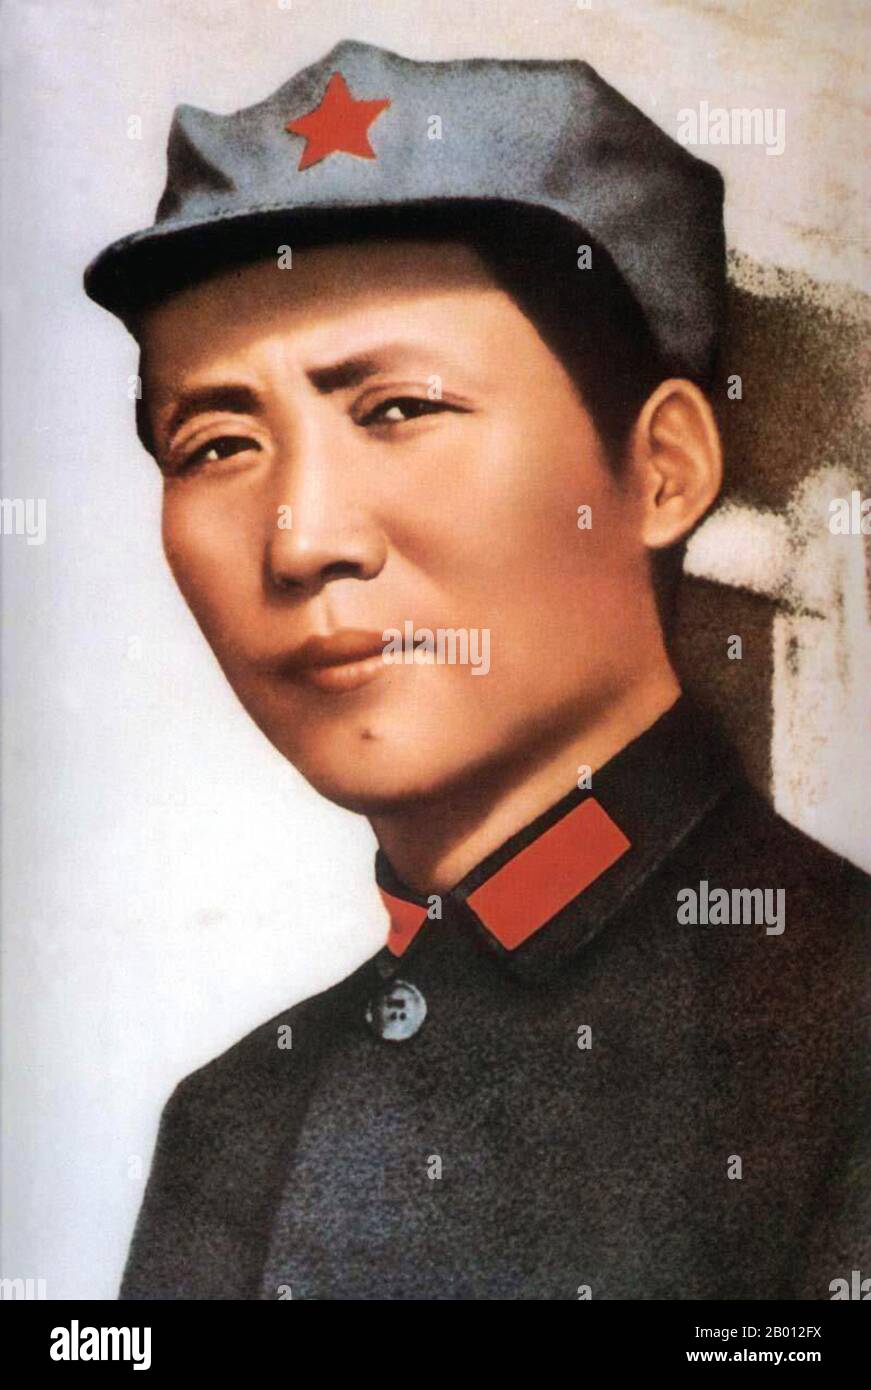 Cina: MAO Zedong (Mao TSE-Tung, 1893-1976) a Yan'an (Yenan) nel 1935. MAO Zedong, anche traslitterato come Mao TSE-tung, rivoluzionario comunista cinese, stratega guerriglia guerriero, autore, teorico politico, E leader della Rivoluzione cinese. Comunemente indicato come presidente Mao, è stato l'architetto della Repubblica popolare Cinese (PRC) dalla sua fondazione nel 1949, e ha mantenuto il controllo autoritario sulla nazione fino alla sua morte nel 1976. Il suo contributo teorico al marxismo-leninismo, insieme alle sue strategie militari e politiche, sono ora collettivamente noti come Maoismo. Foto Stock